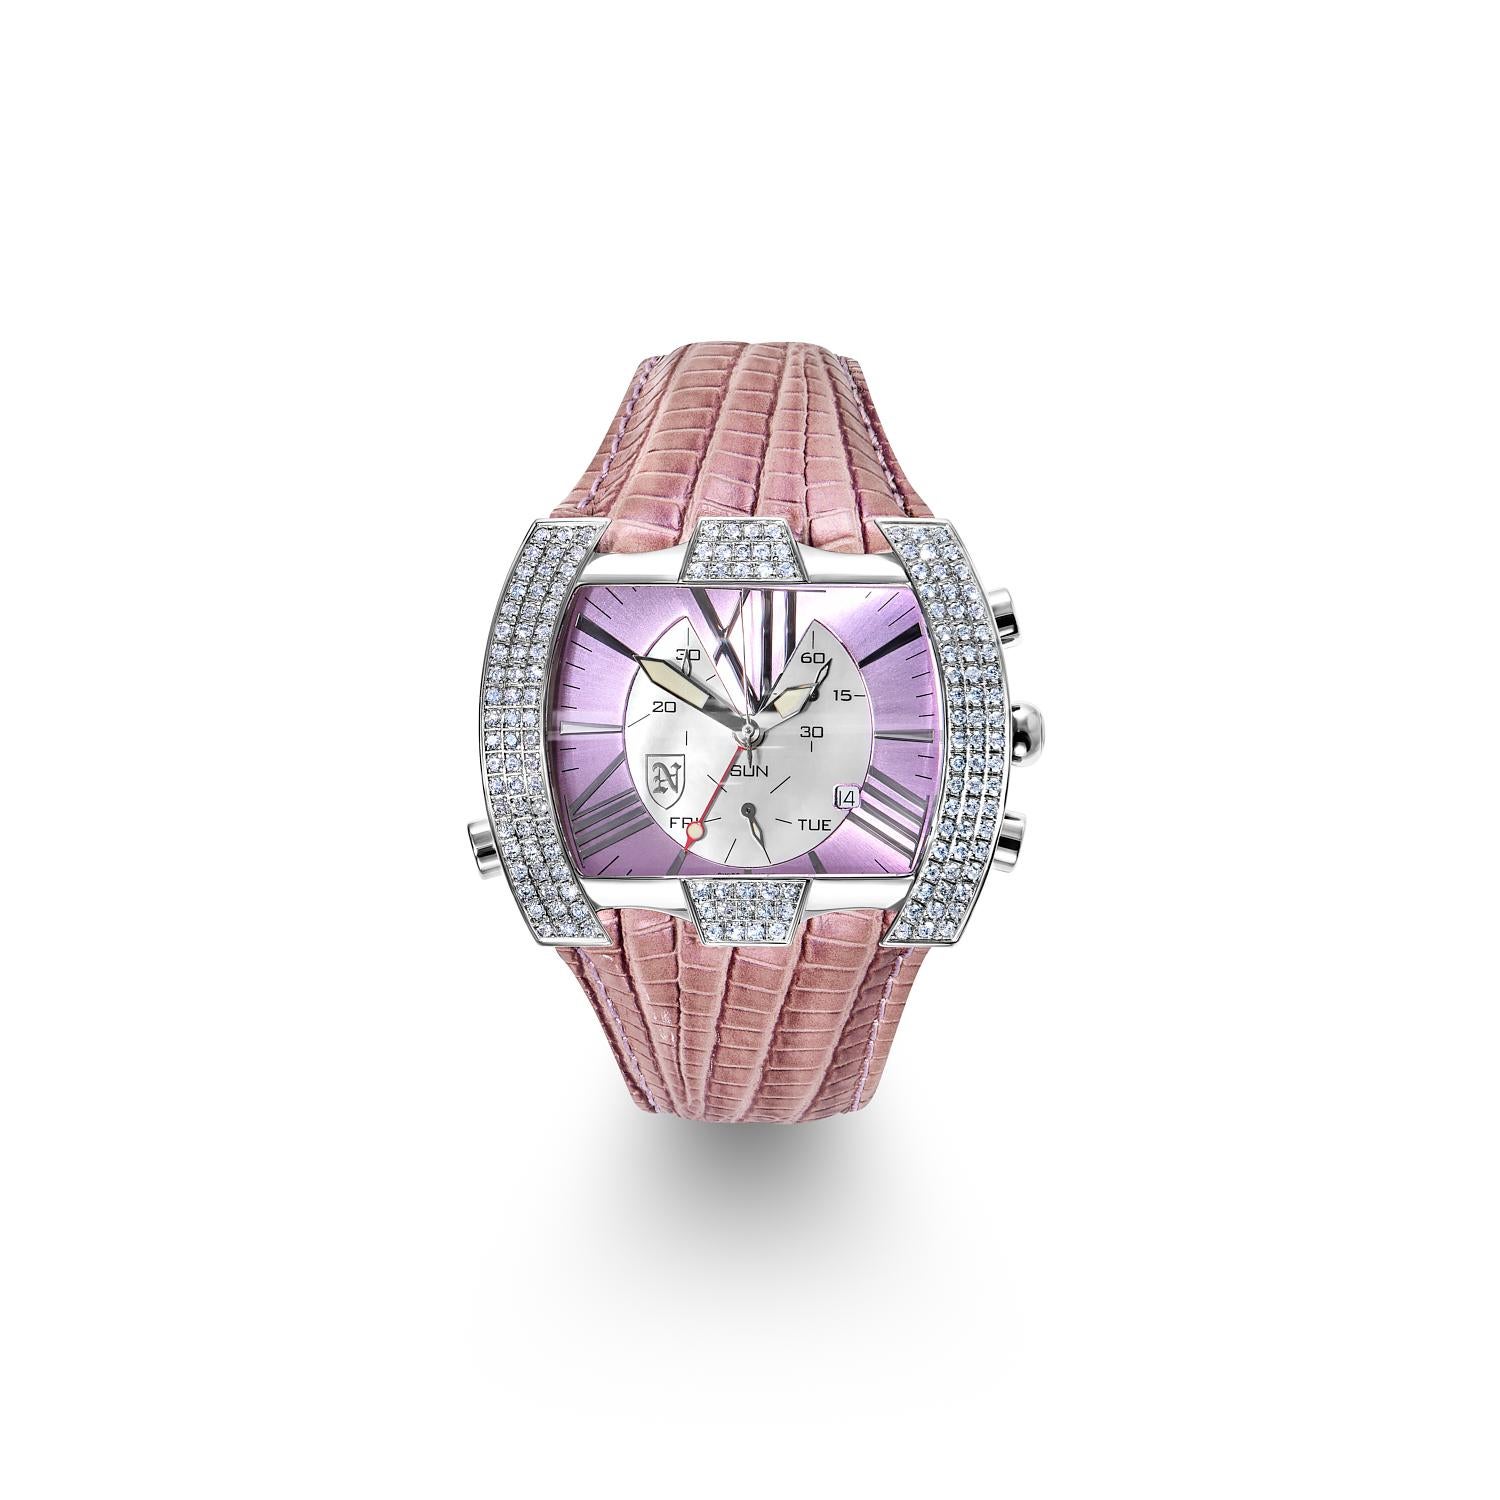 Nekta Watch: Magic
Diamond Carats: 2.35 Carats
Settings: Pave Diamonds
Pink Leather Strap